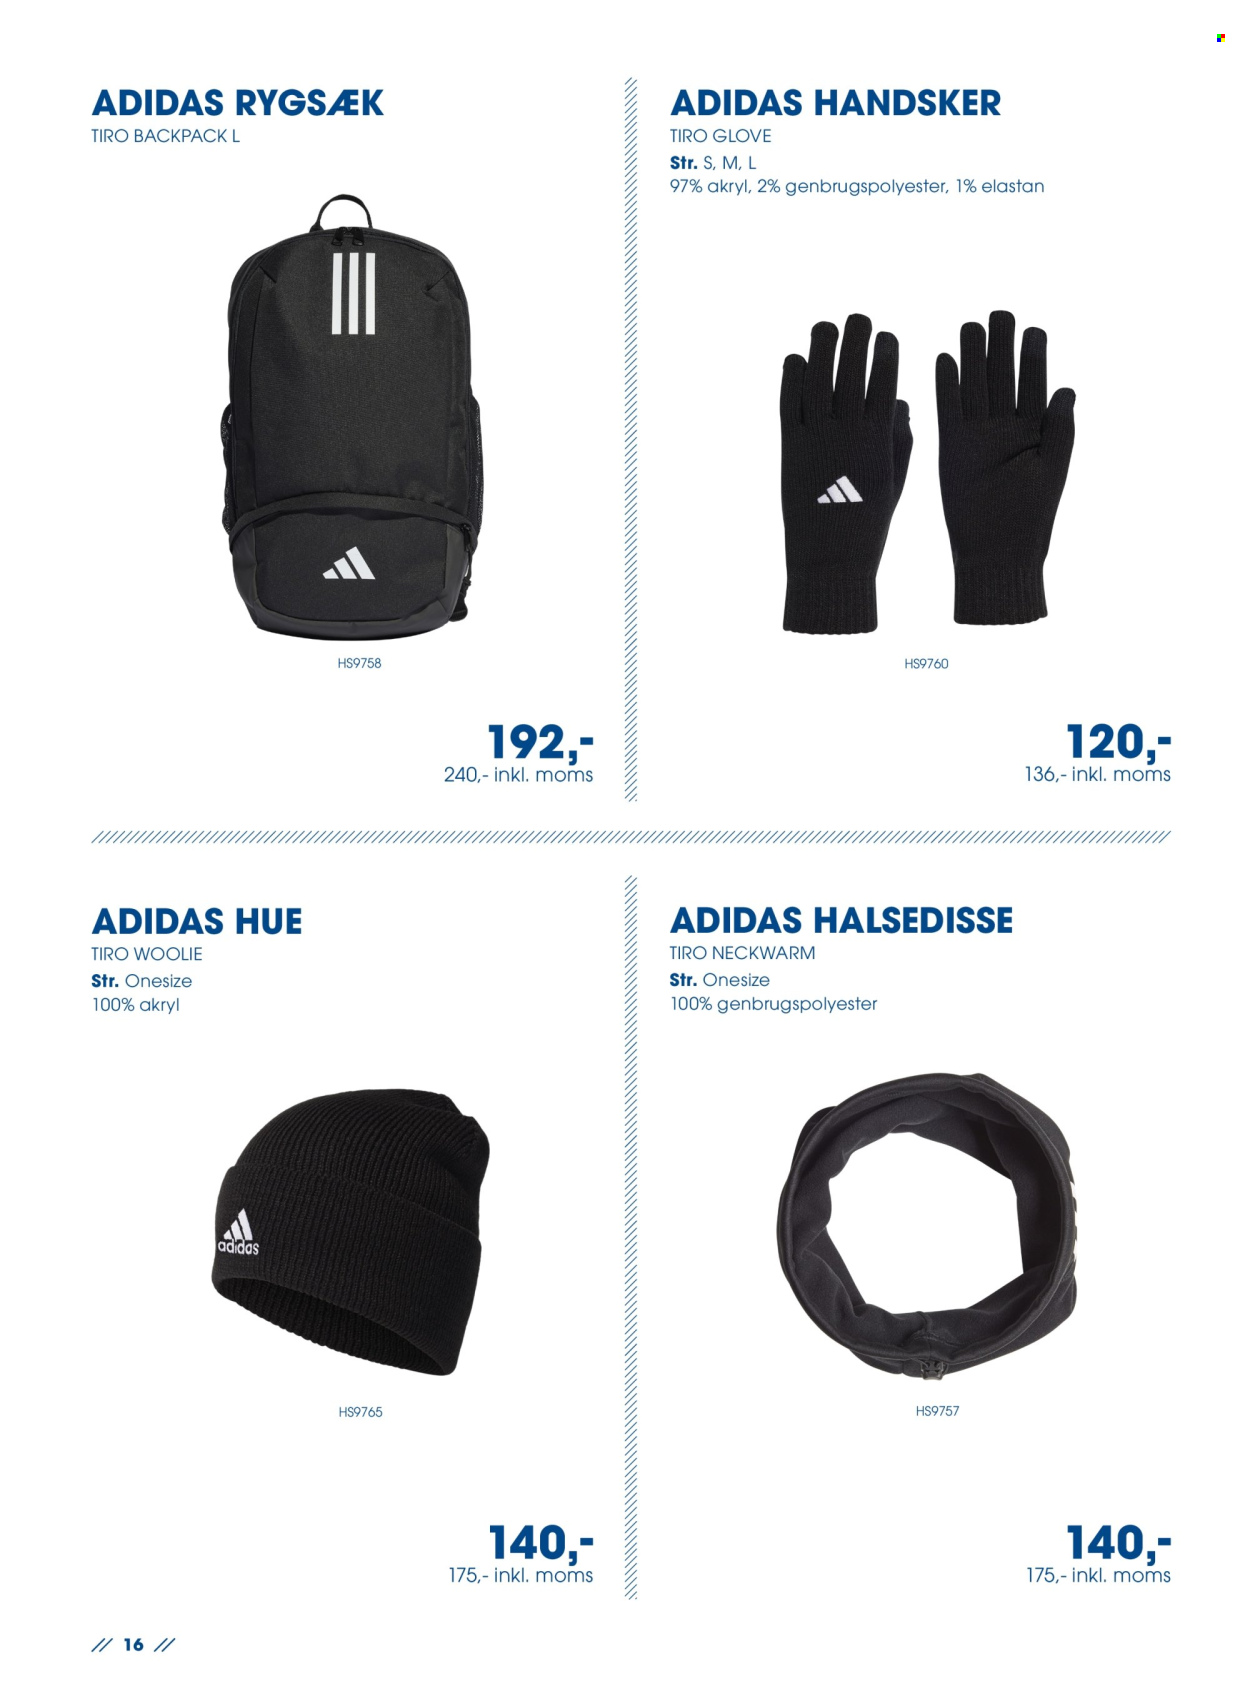 thumbnail - Sportigan tilbud  - tilbudsprodukter - Adidas, Hue, handske, rygsæk. Side 16.